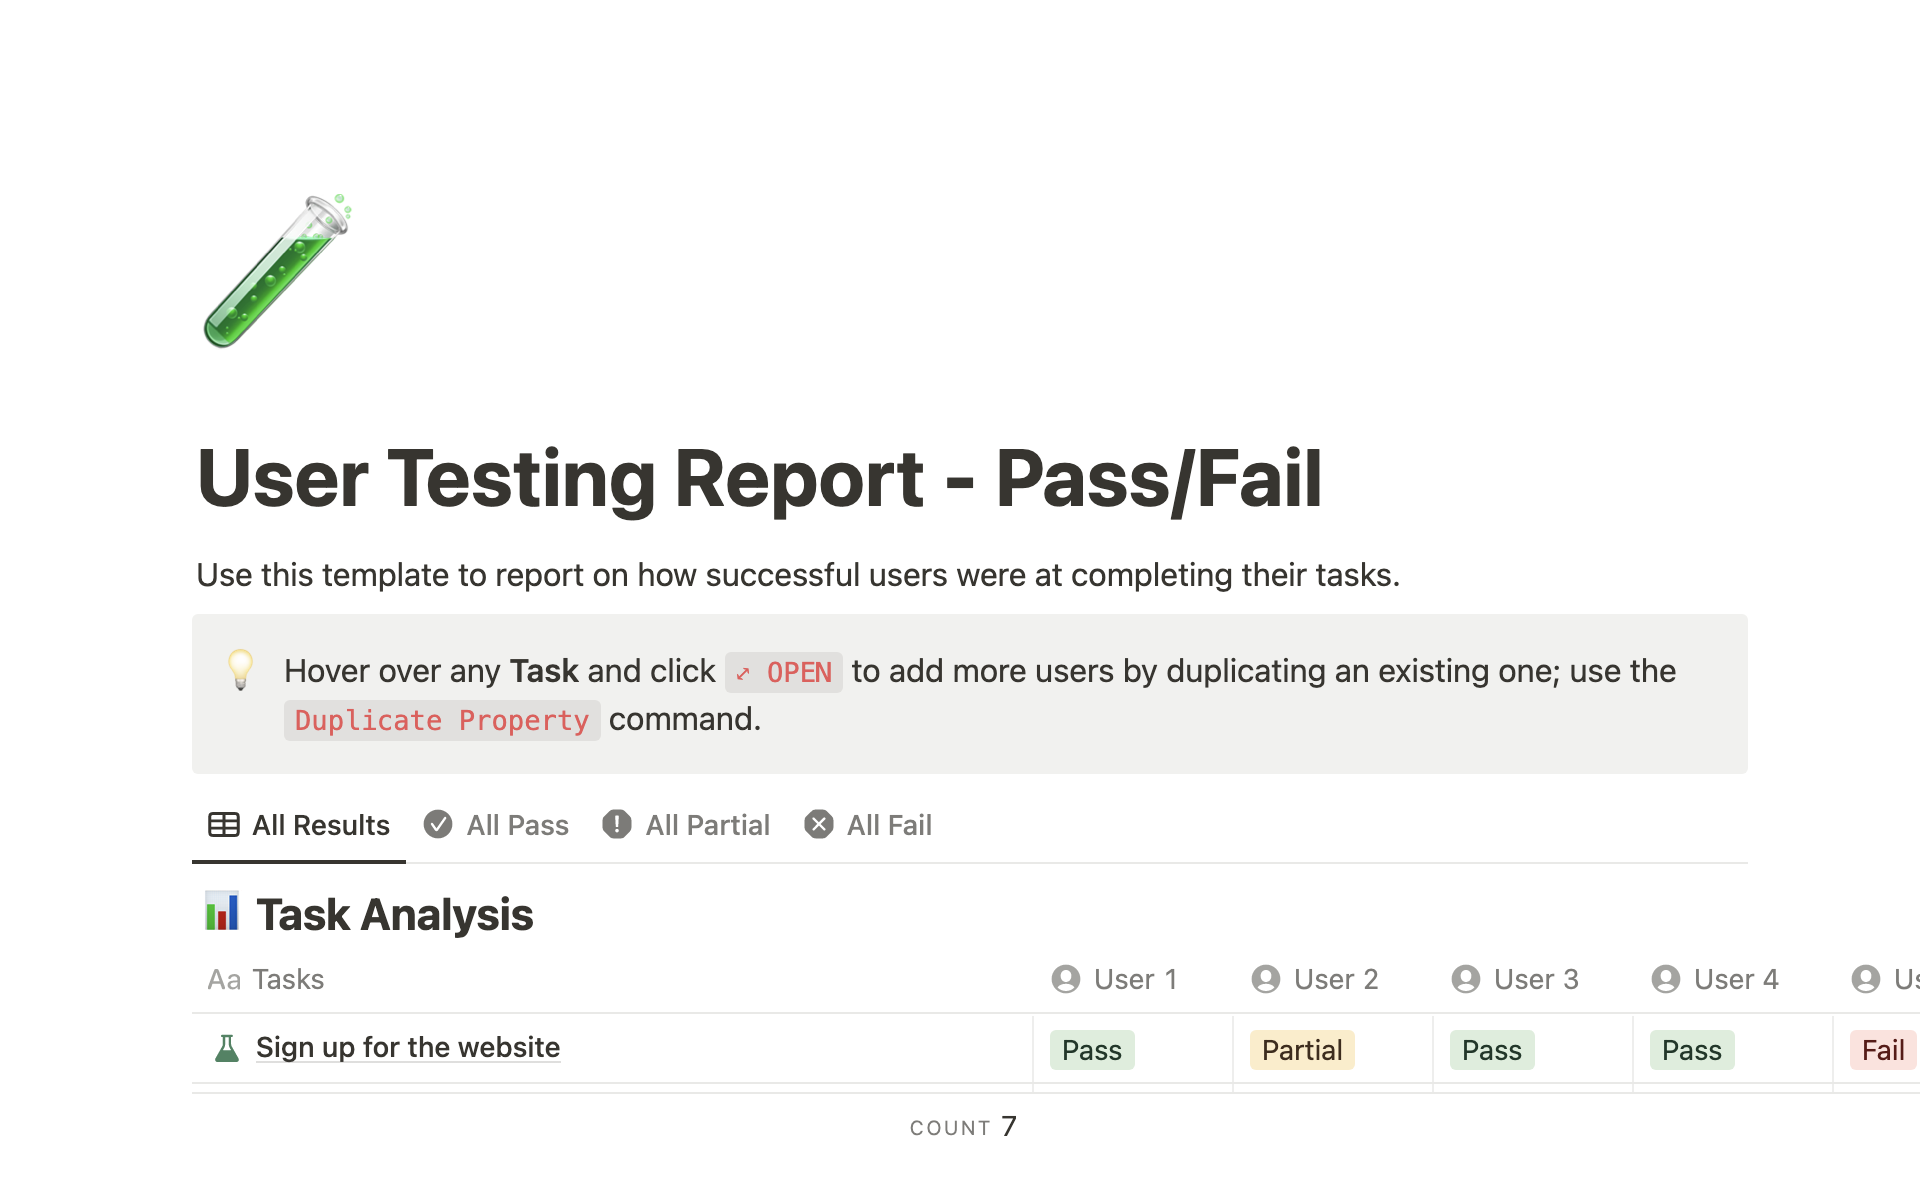 Uma prévia do modelo para User Testing Report